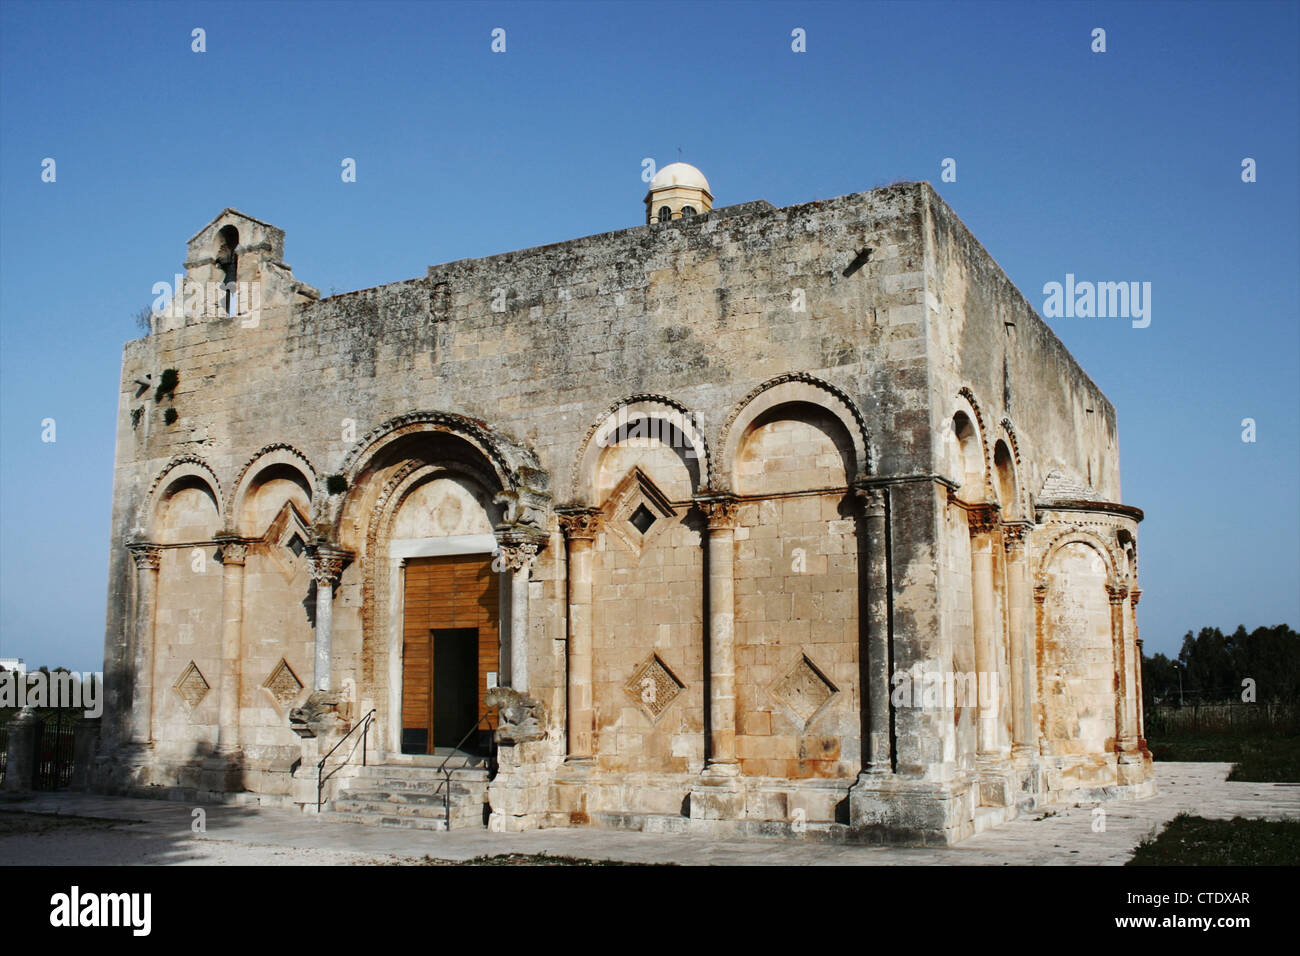 Apulia - Ancient Romanesque Italian Church in Foggia. Stock Photo